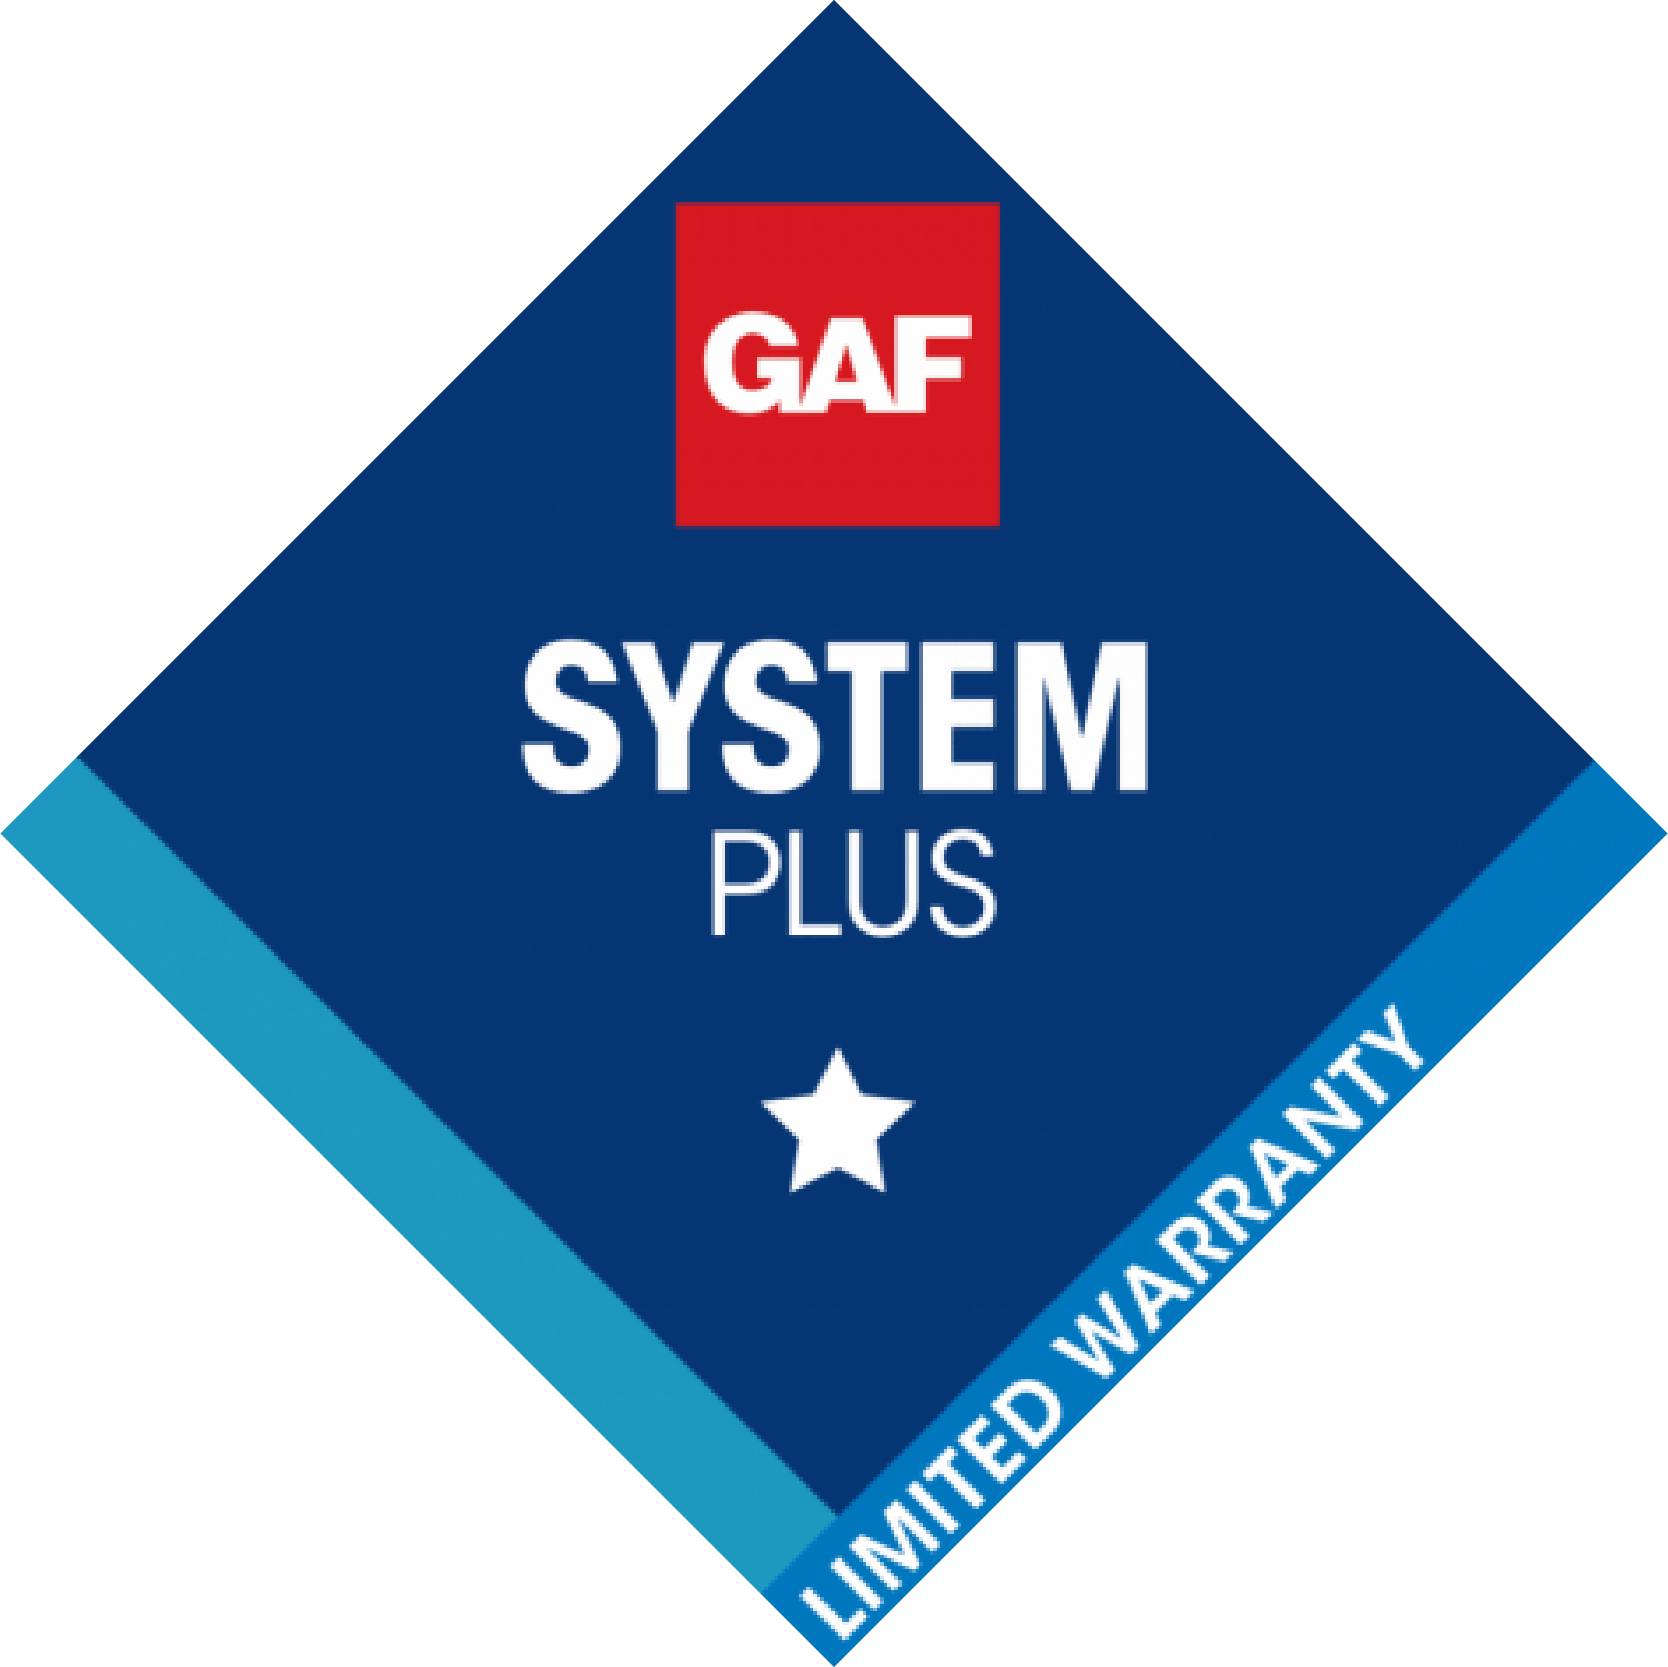 GAF System Plus Warranty Logo